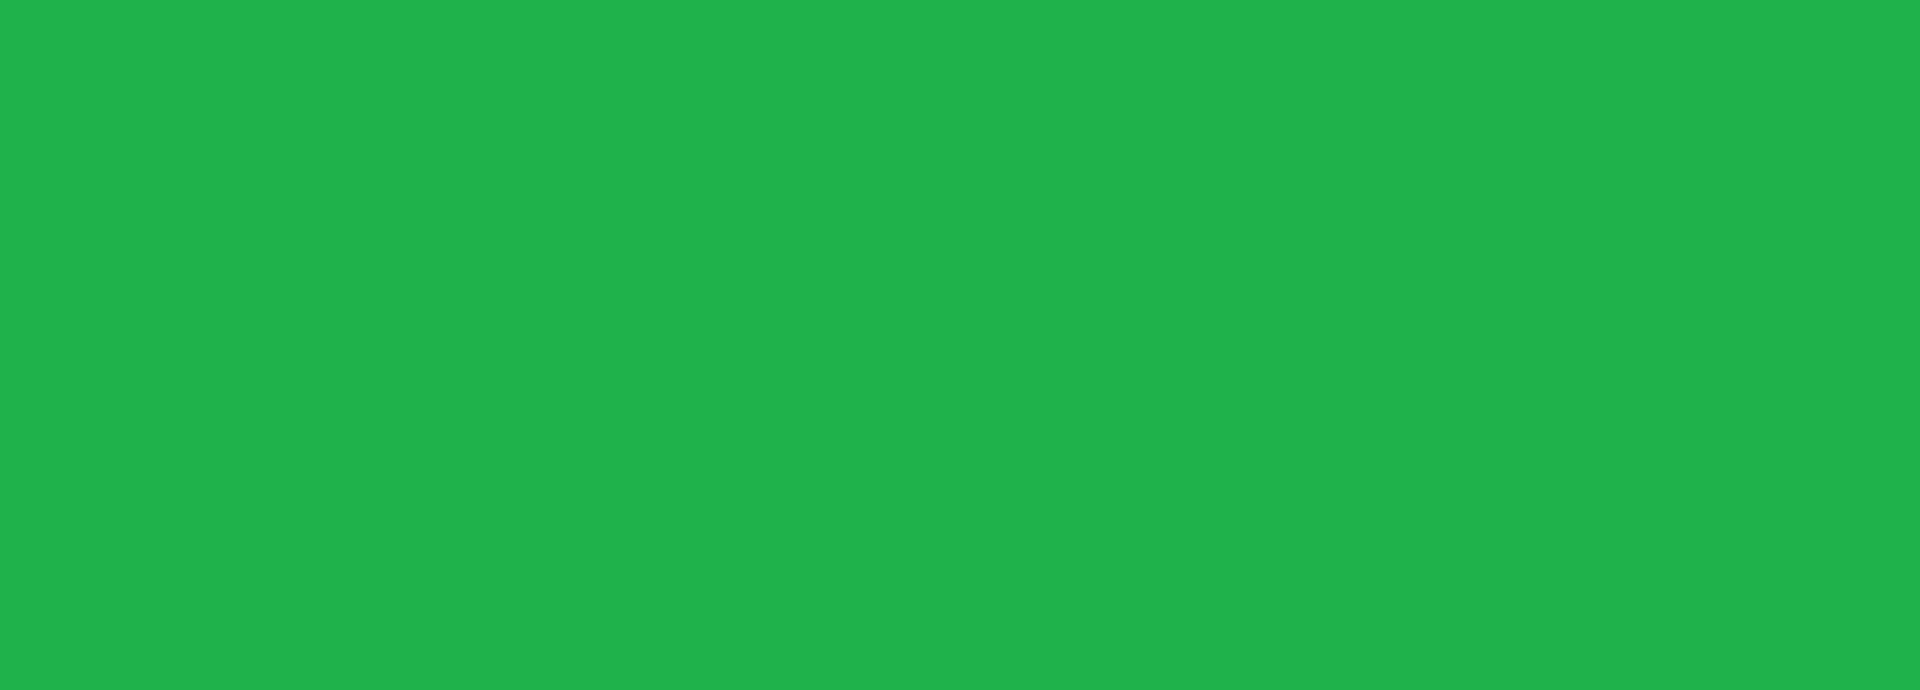 169 69. Зеленый цвет однотонный. Lime Green цвет. Sea Green цвет. Green Solid.